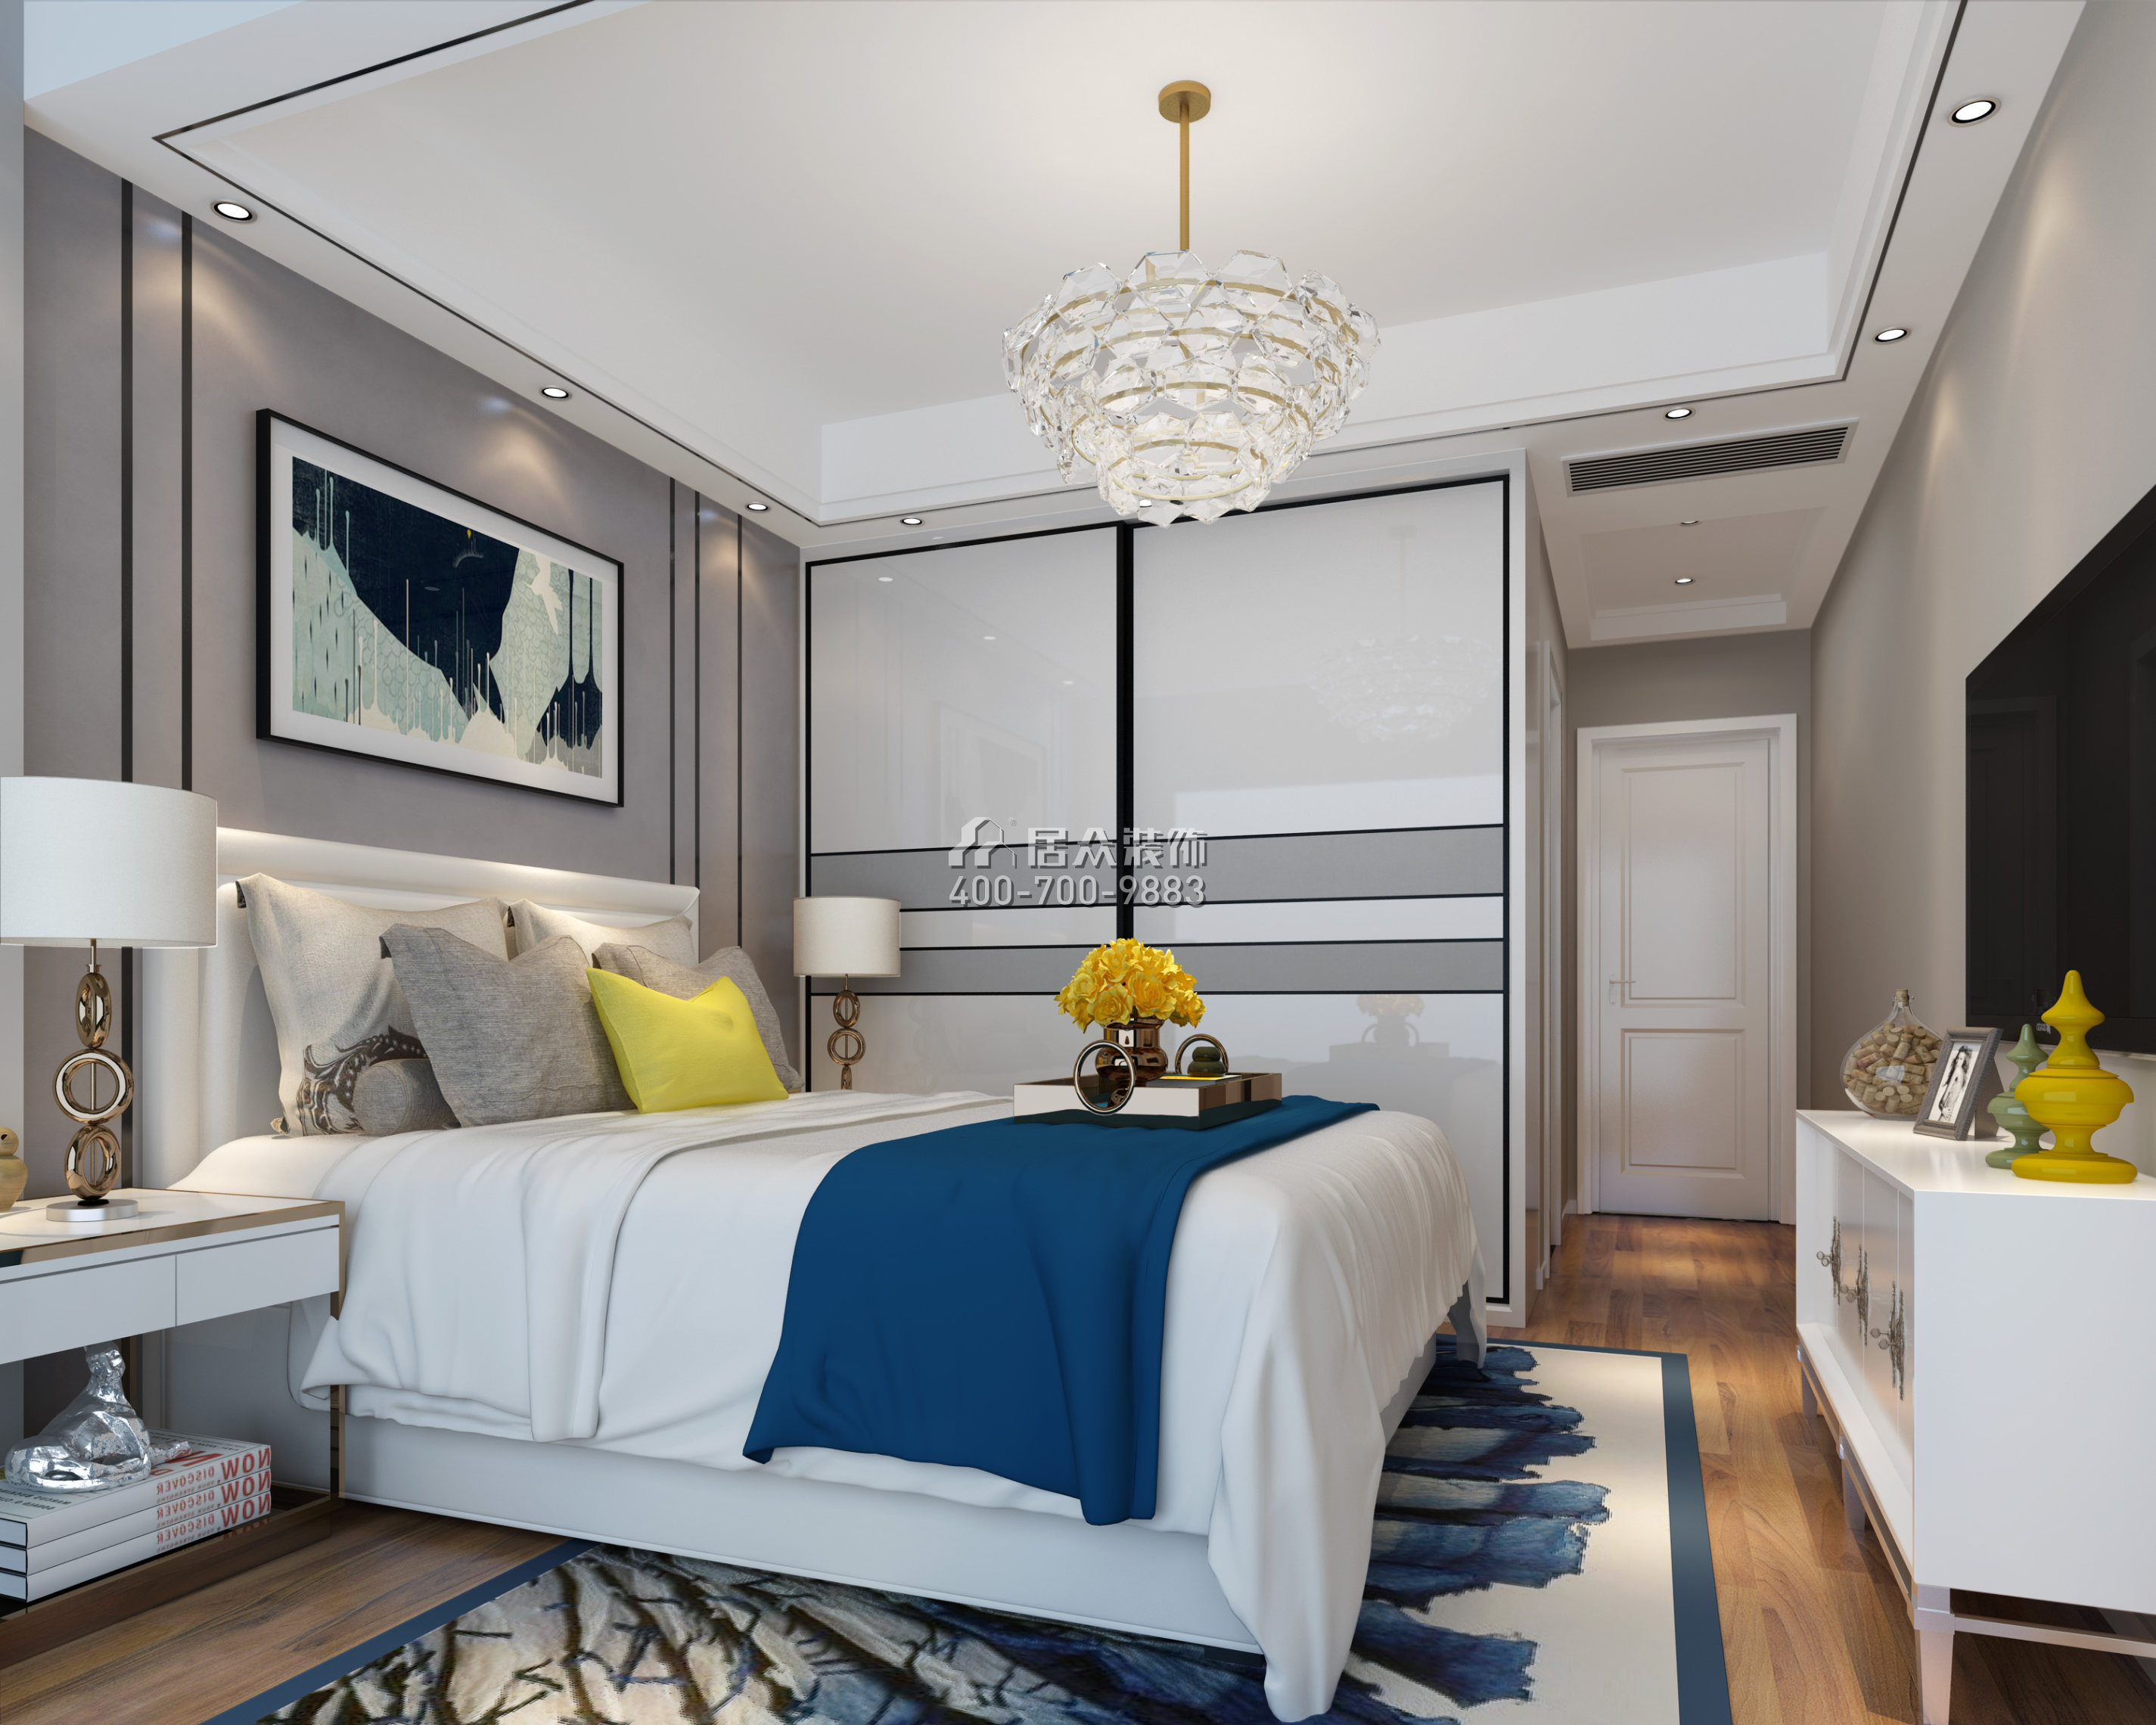 联投东方华府二期120平方米现代简约风格平层户型卧室装修效果图